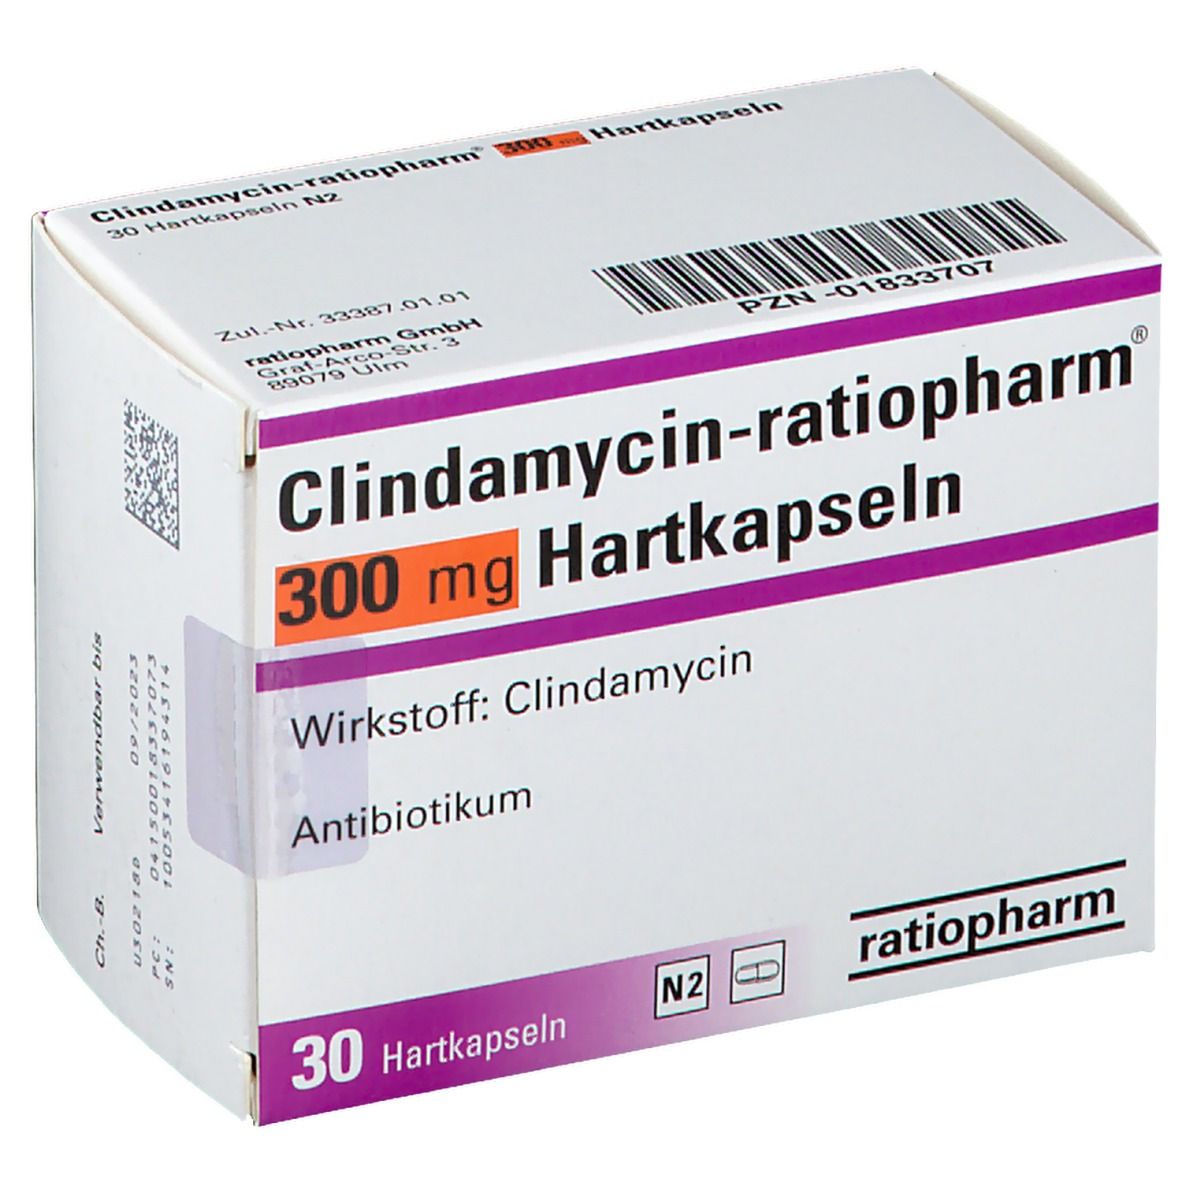 Climdamycin-ratiopharm® 300 mg